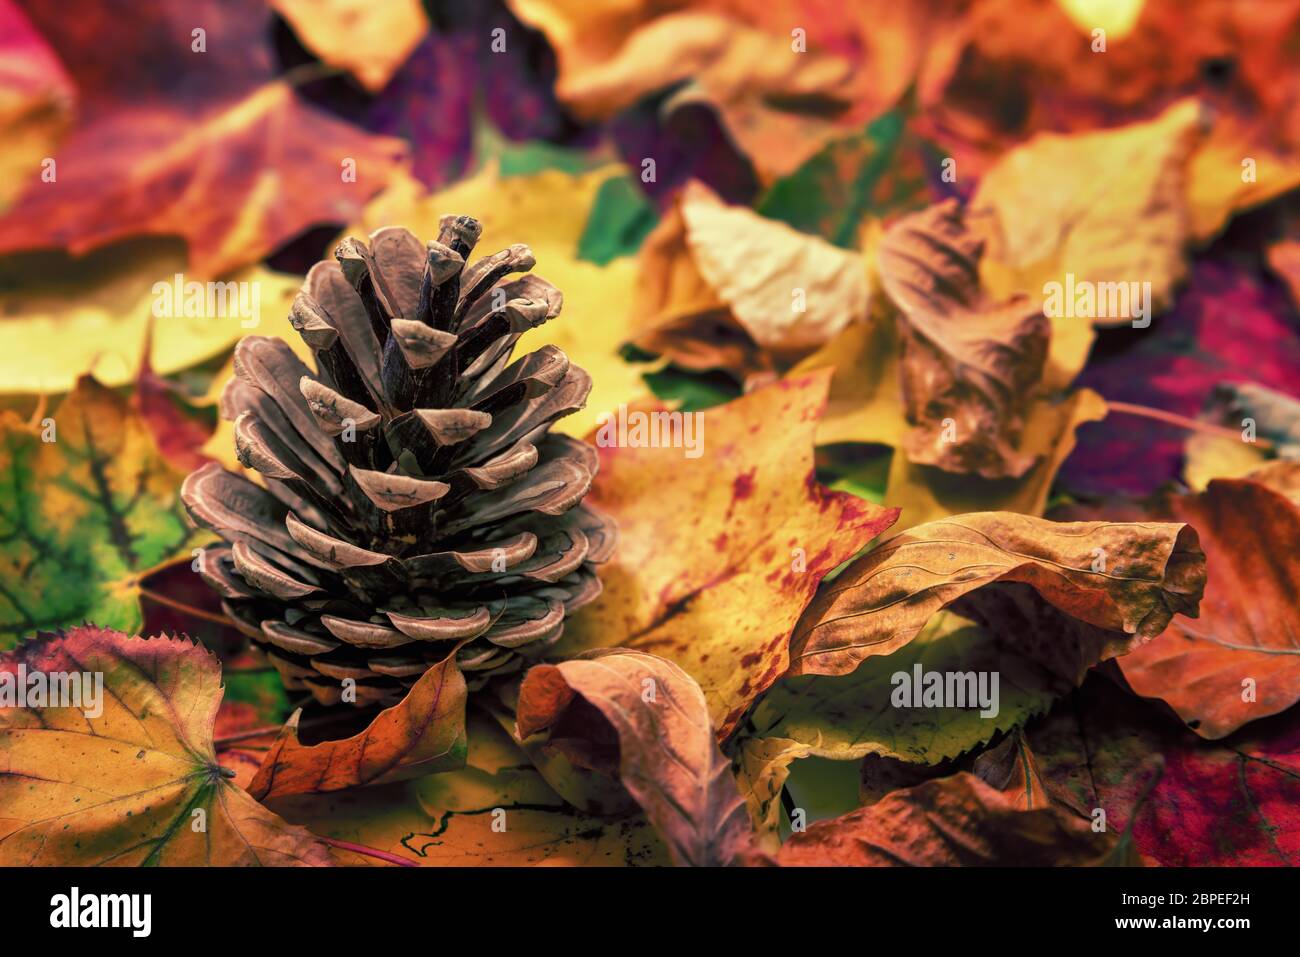 Tannenzapfen auf buntem Laub am Waldboden, schöne Herbstfarben, Studioaufnahme Foto Stock